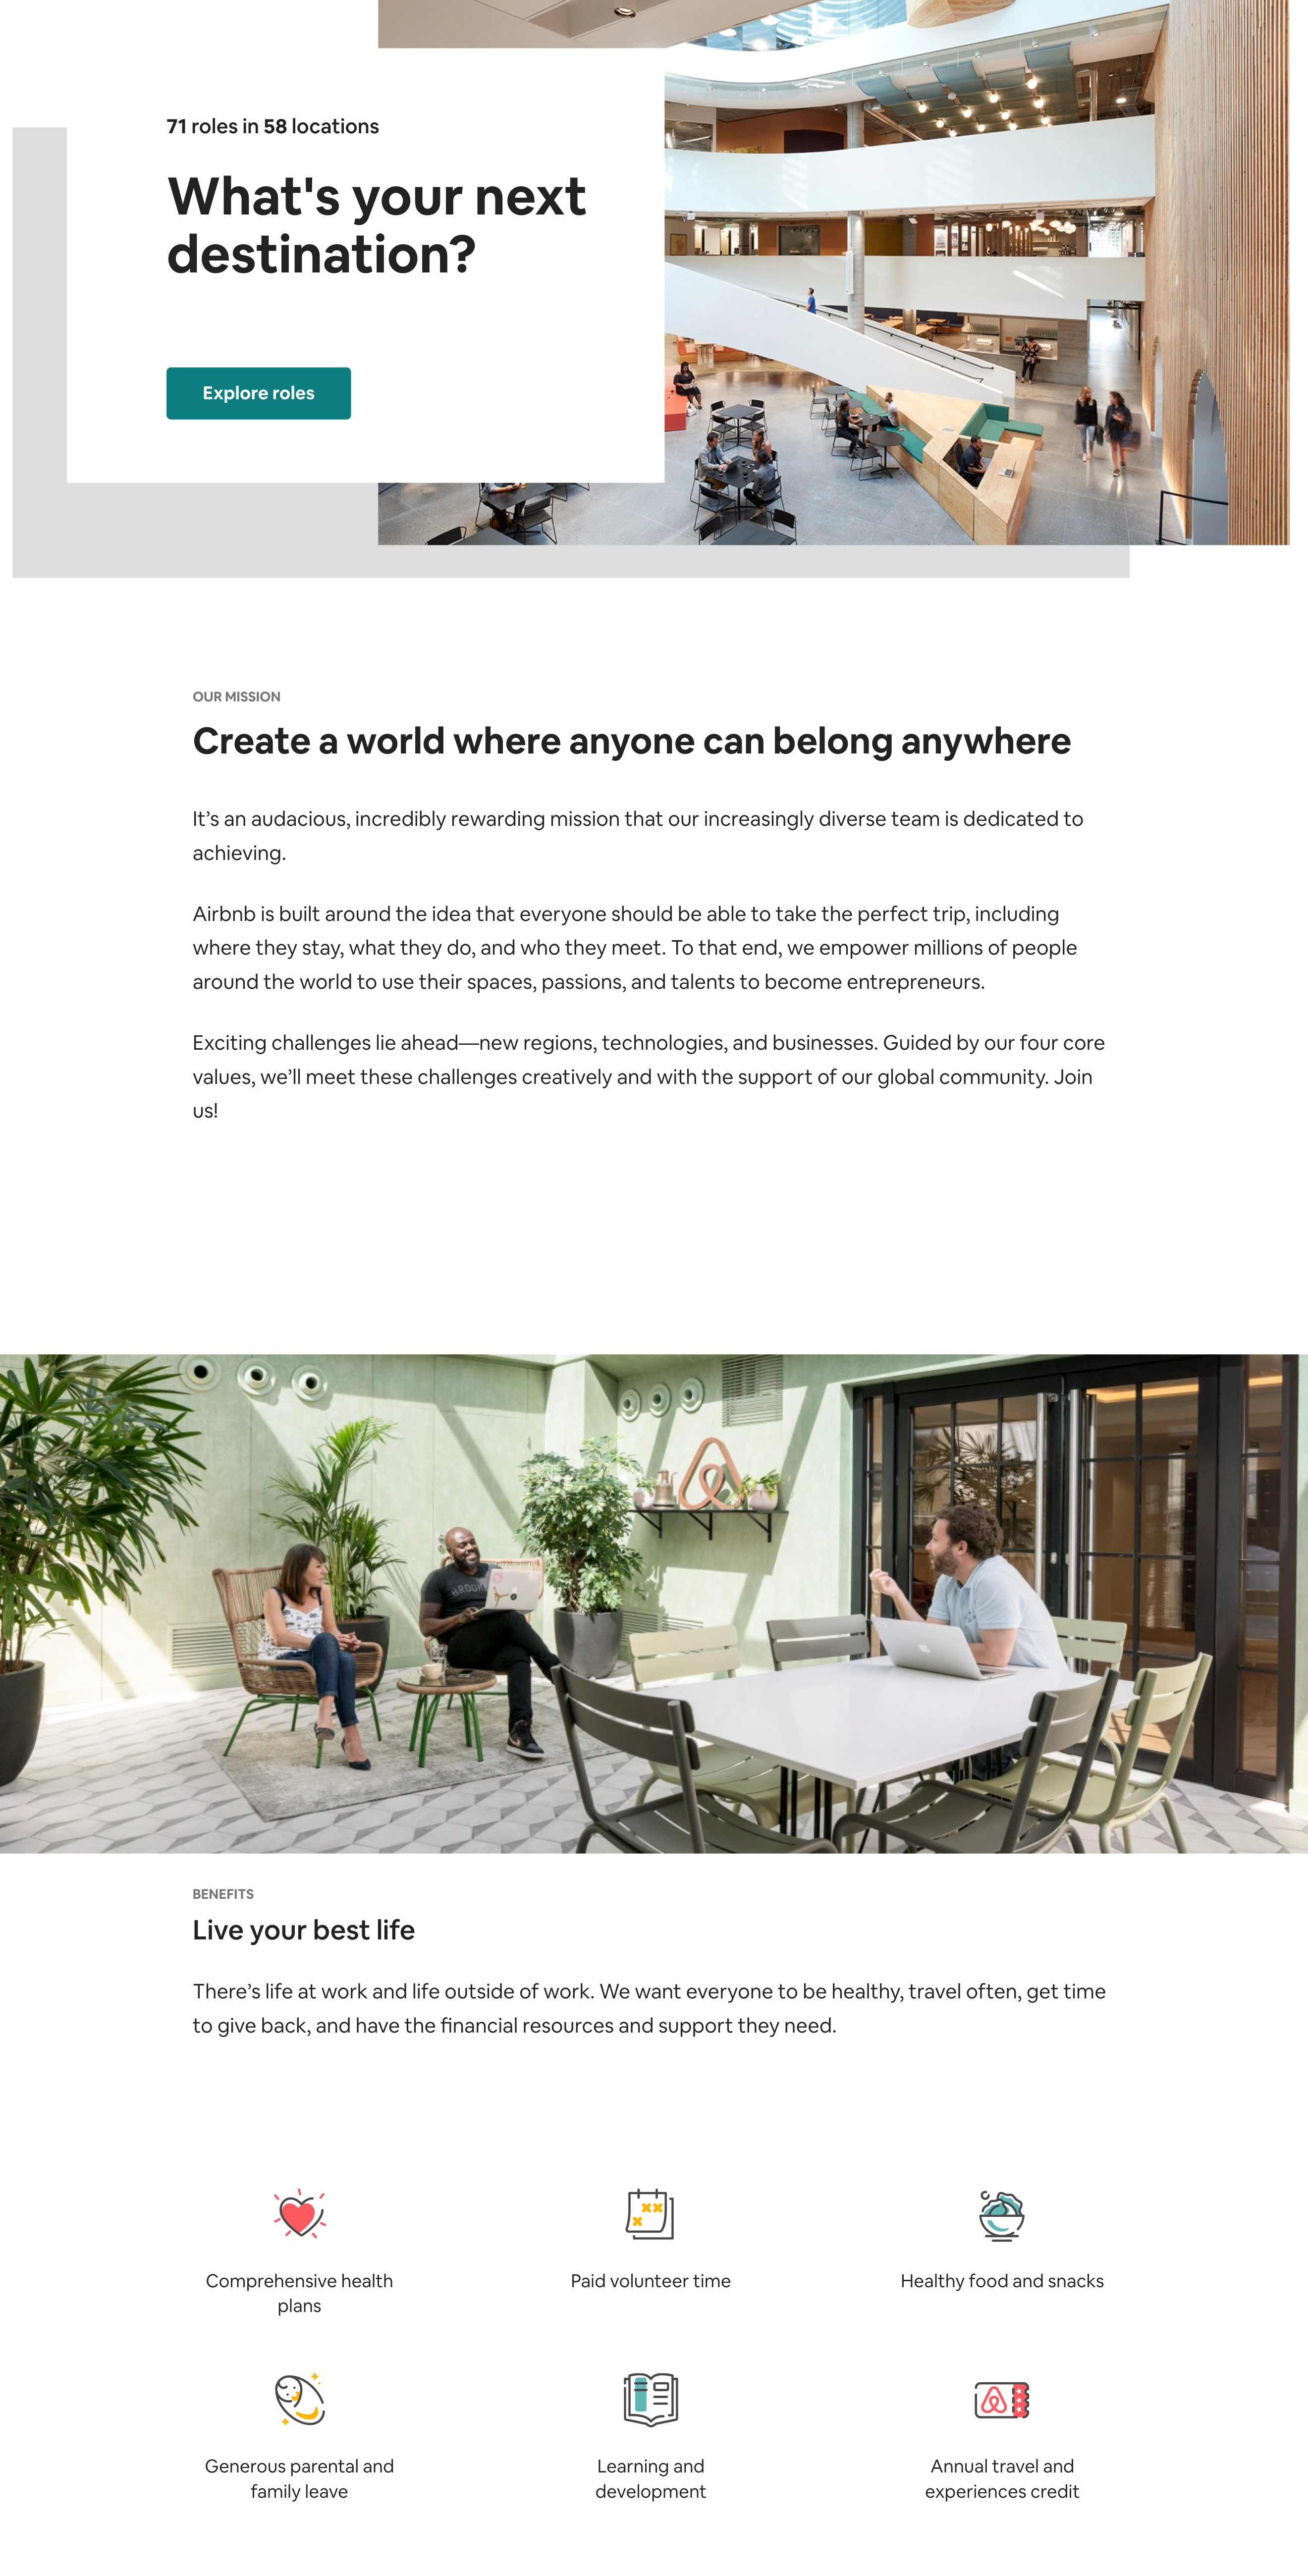 ตัวอย่างหน้า Career Page ของ Airbnb